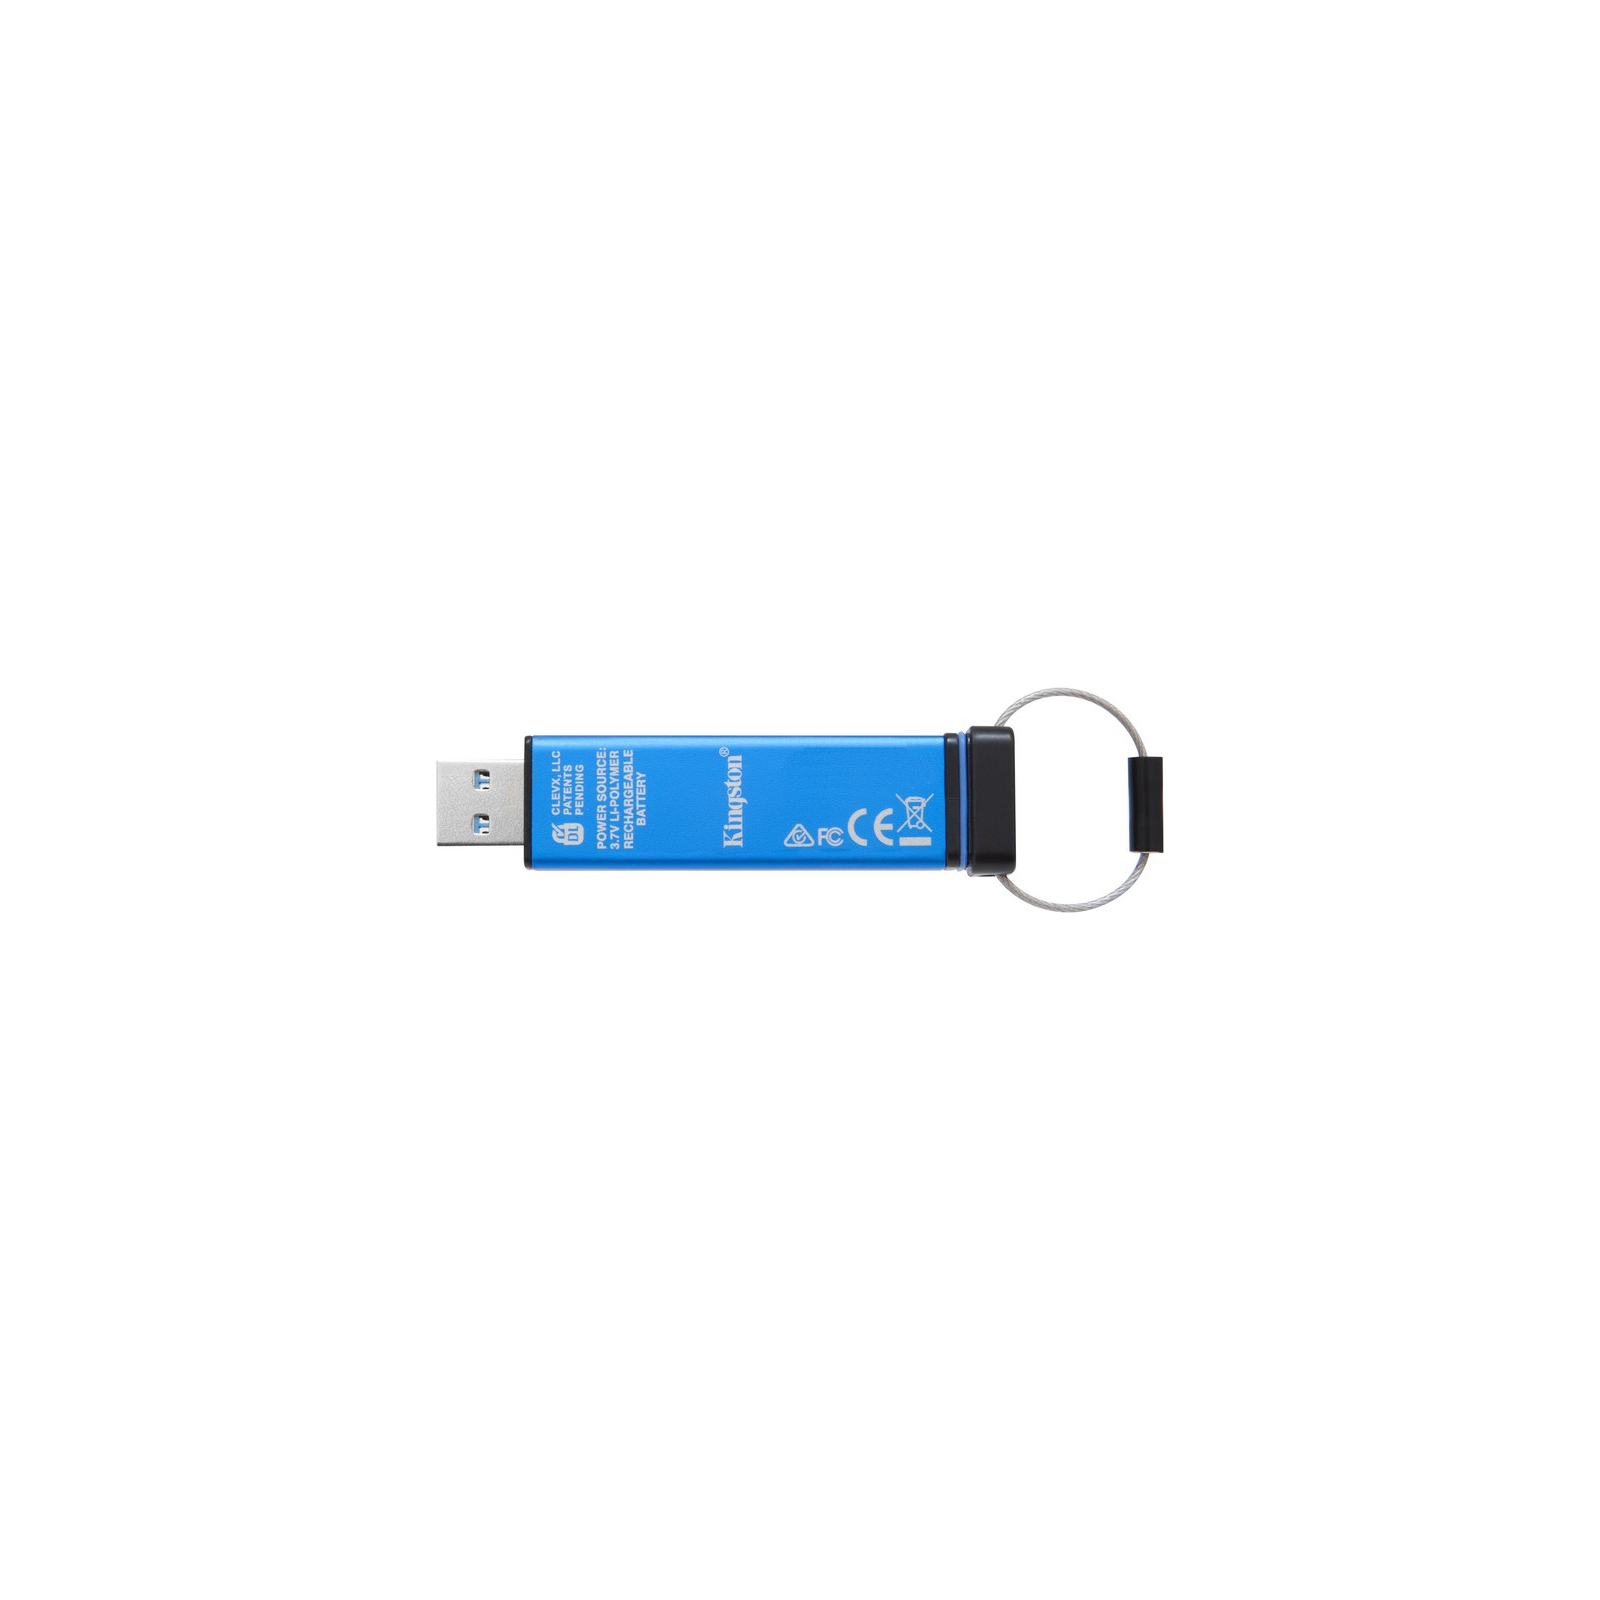 USB флеш накопичувач Kingston 16GB DT 2000 Metal Security USB 3.0 (DT2000/16GB) зображення 3